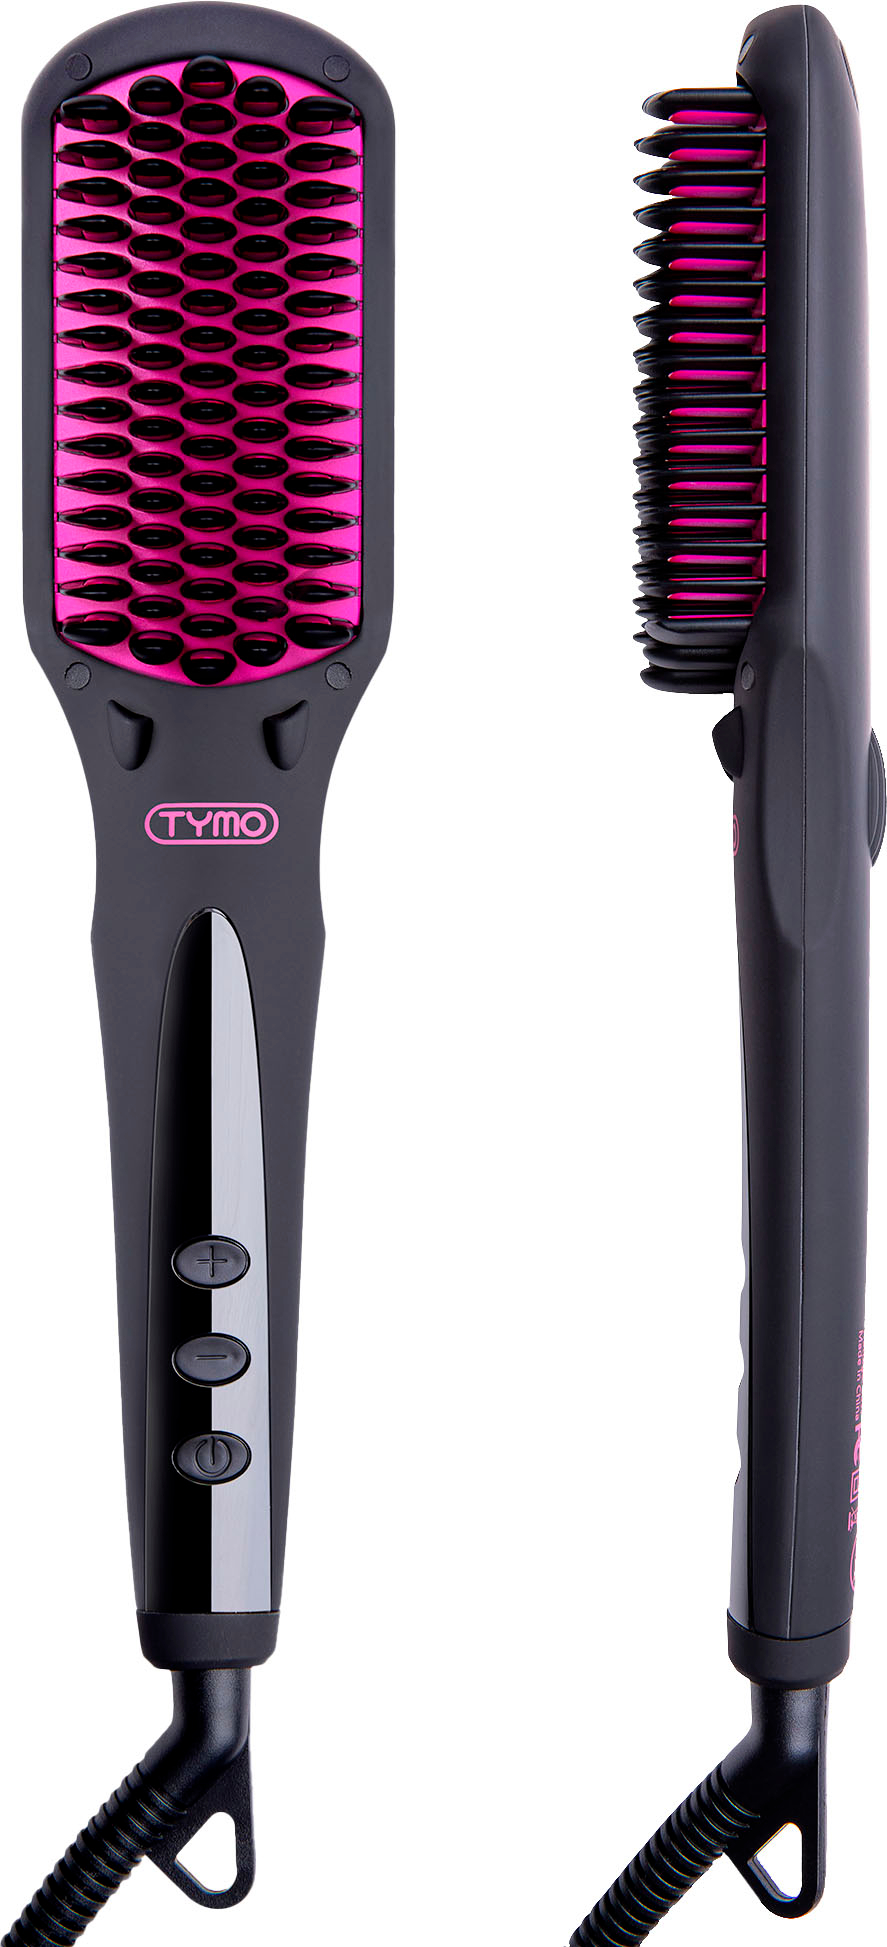 Angle View: TYMO iONIC Hair Straightening Brush - Black